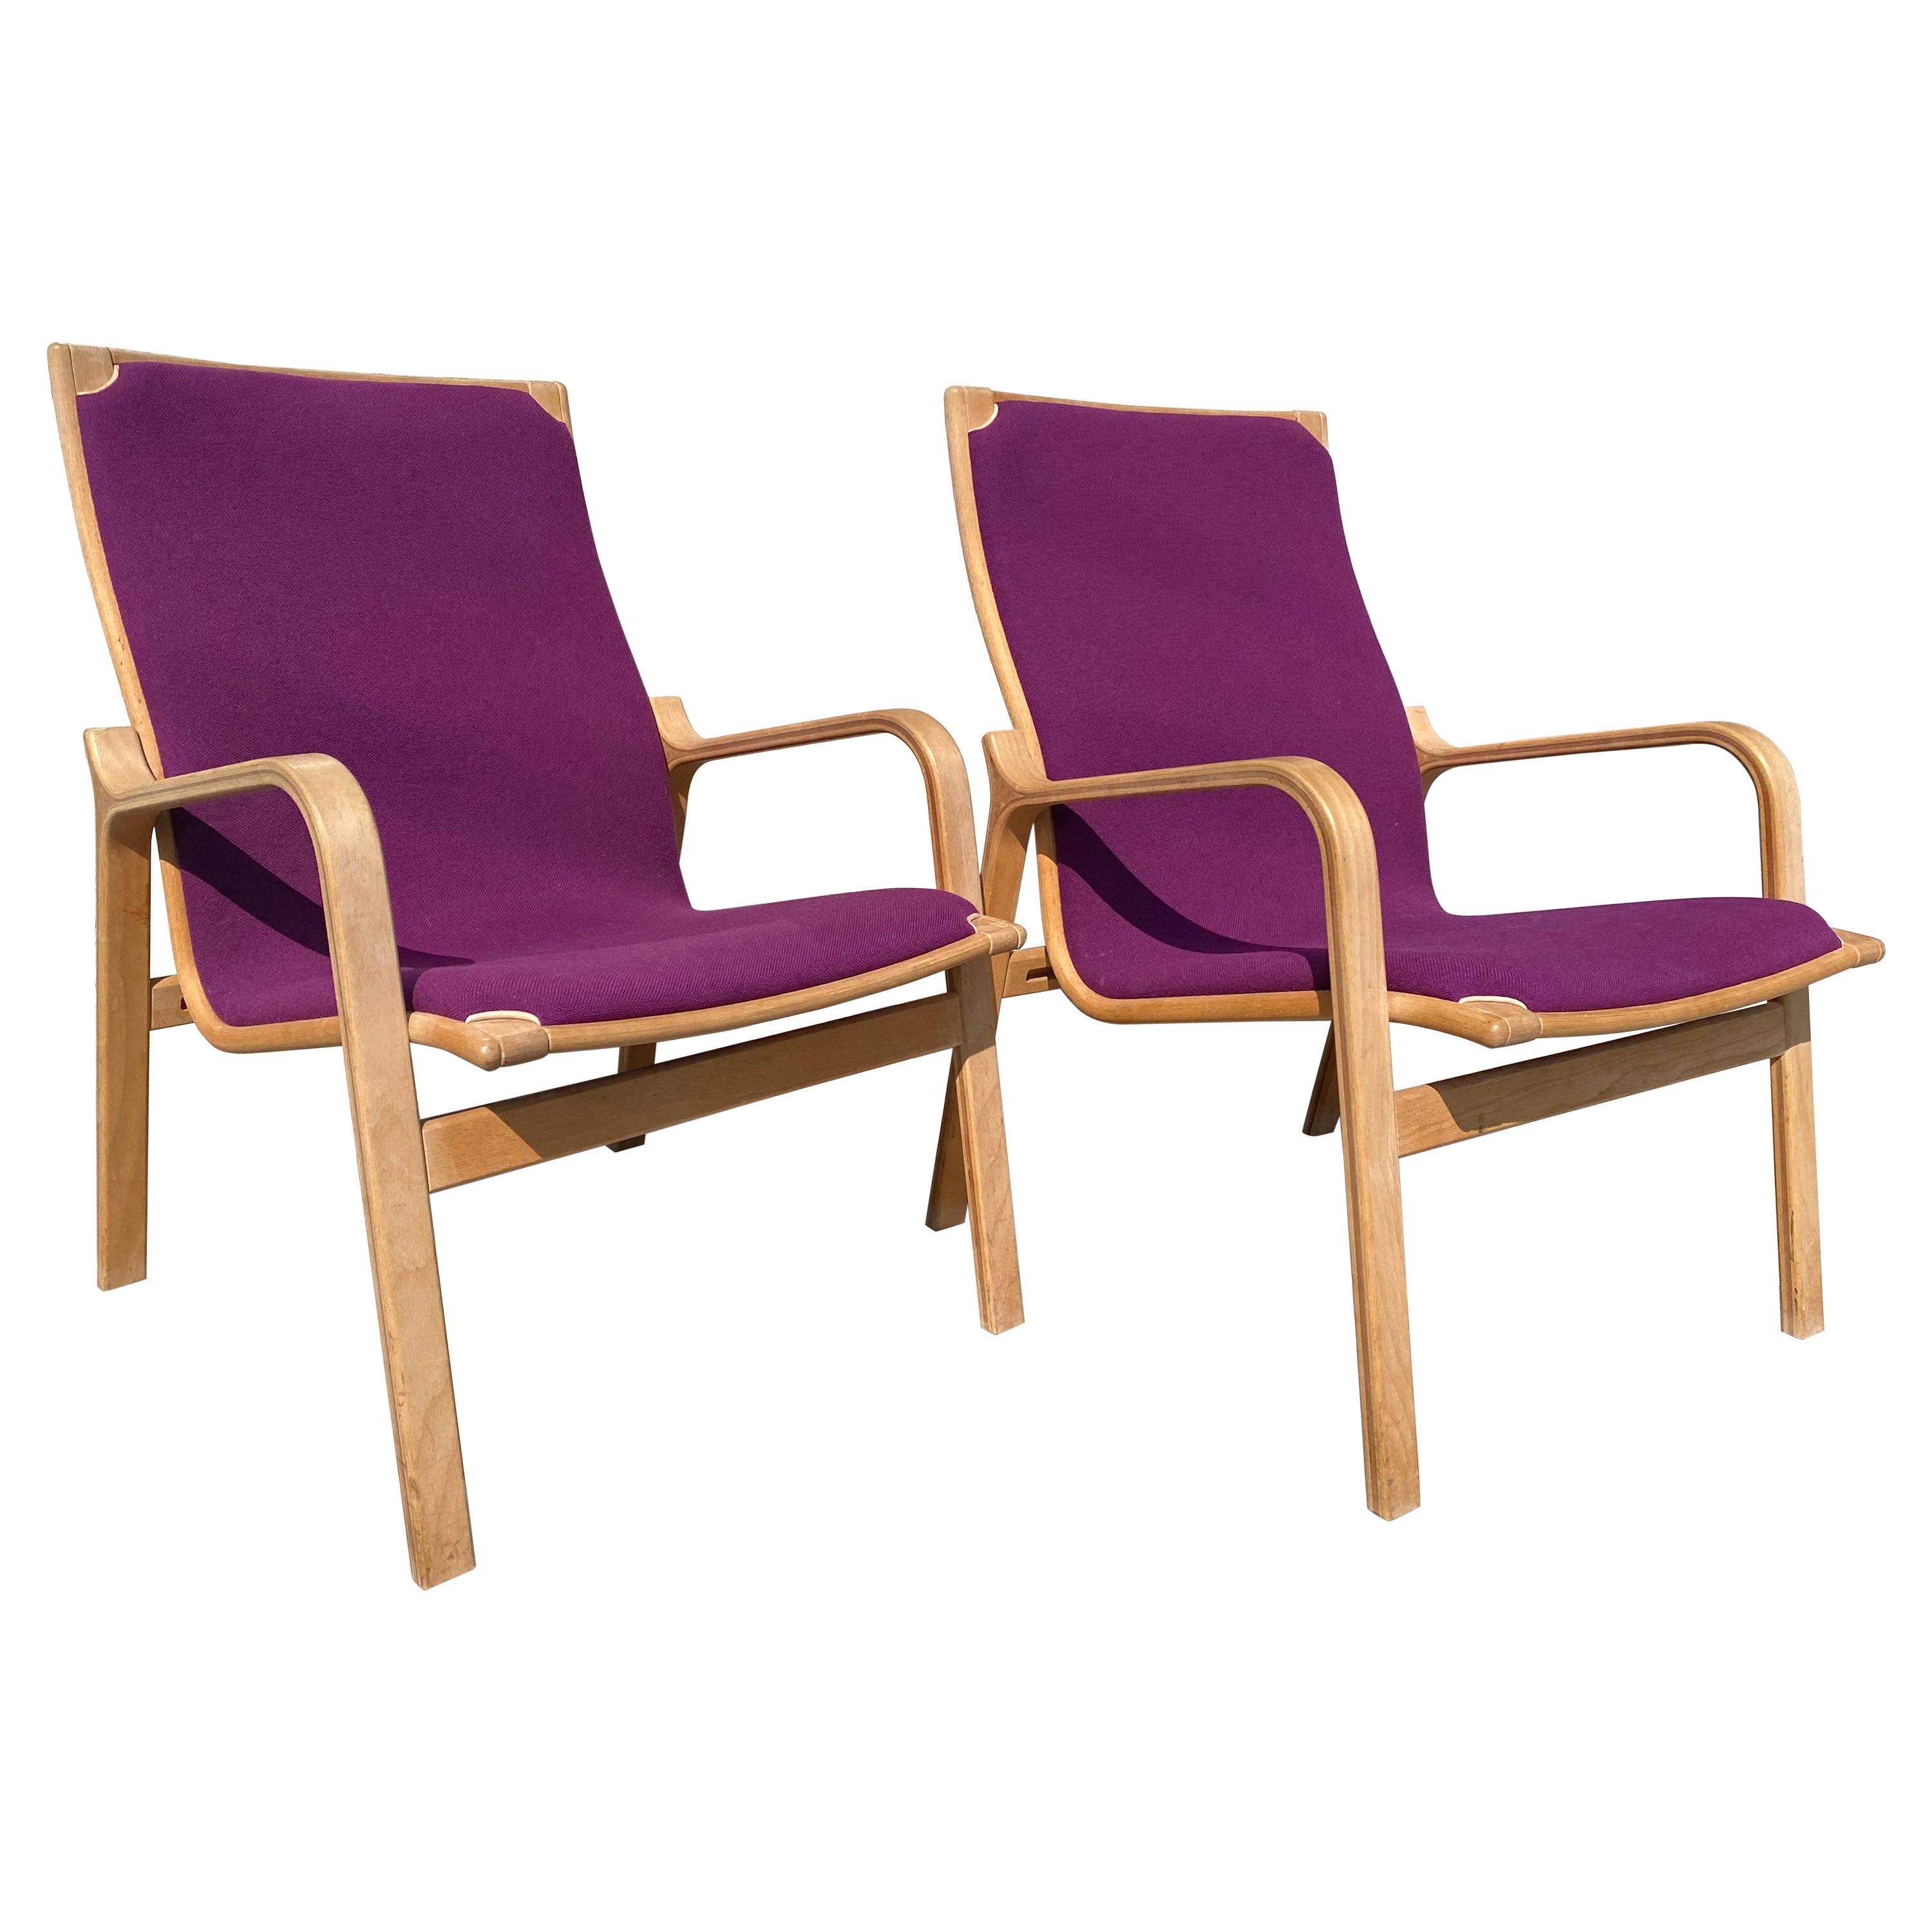 Pair of Mid-Century Danish Modern Lounge Chairs